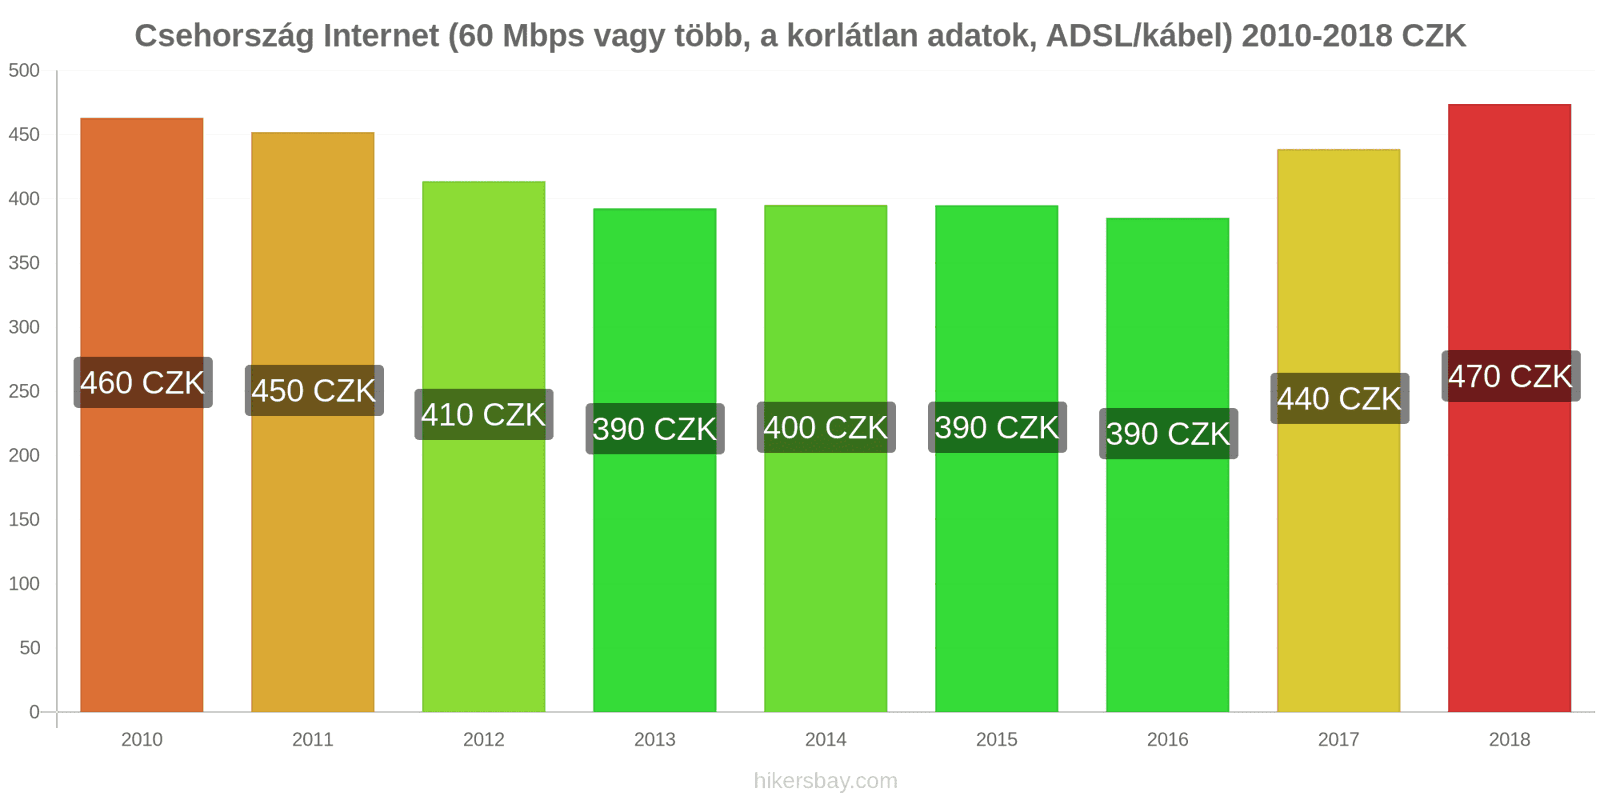 Csehország ár változások Internet (60 Mbps vagy több, korlátlan adat, kábel/ADSL) hikersbay.com